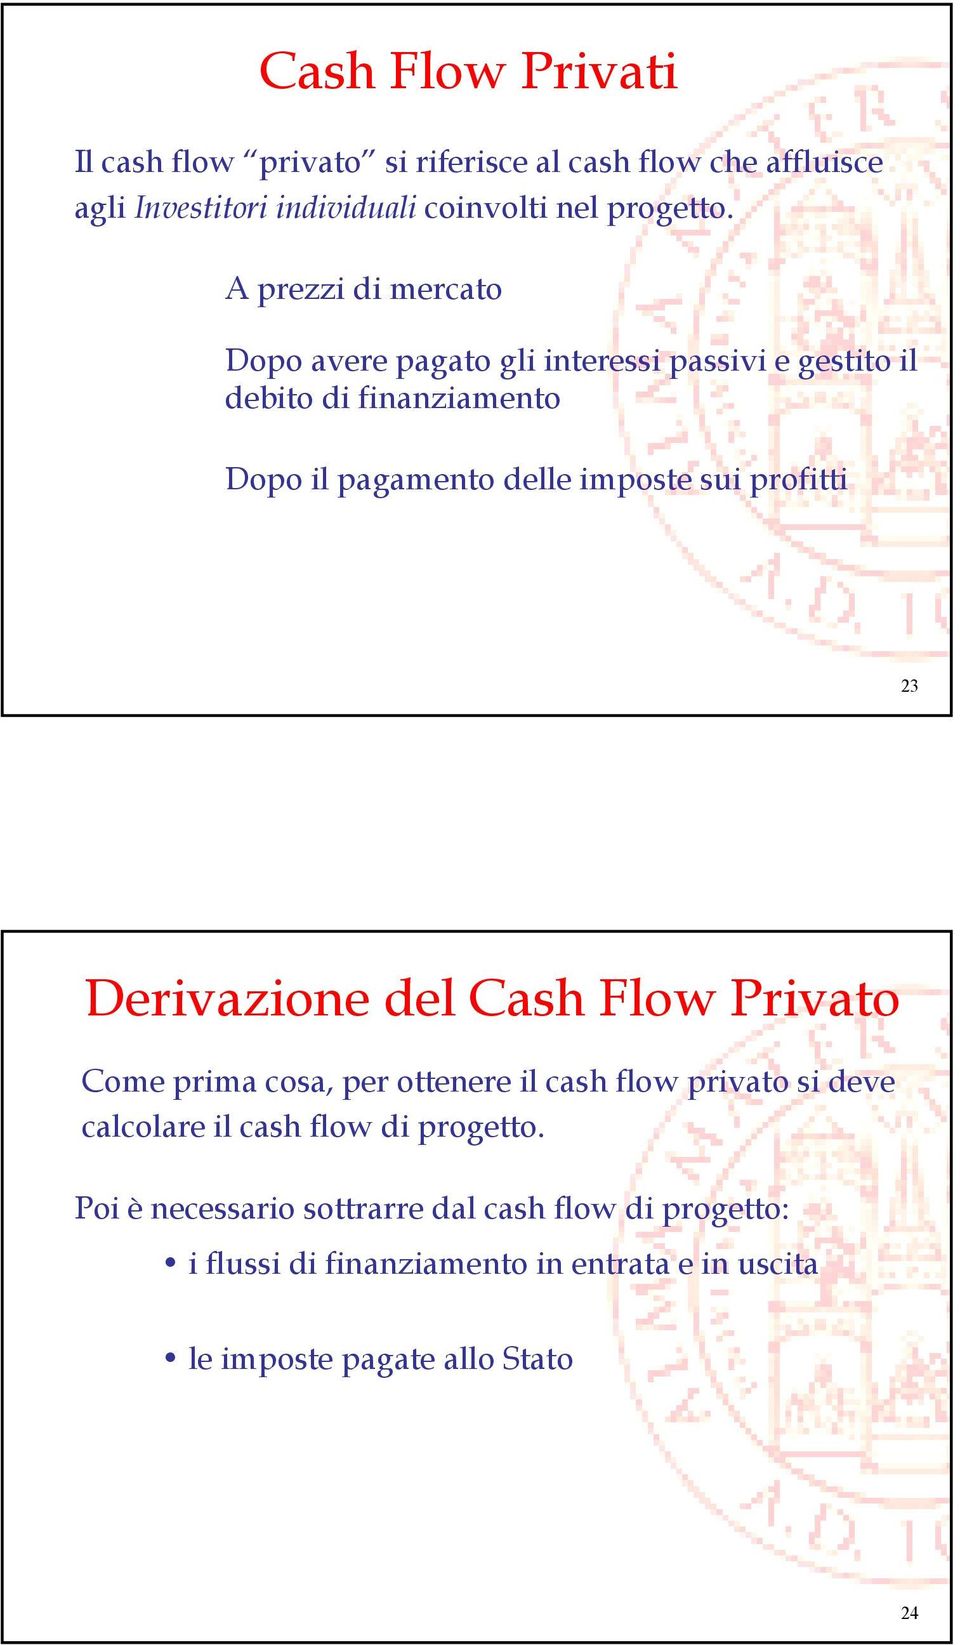 profitti 23 Derivazione del Cash Flow Privato Come prima cosa, per ottenere il cash flow privato si deve calcolare il cash flow di